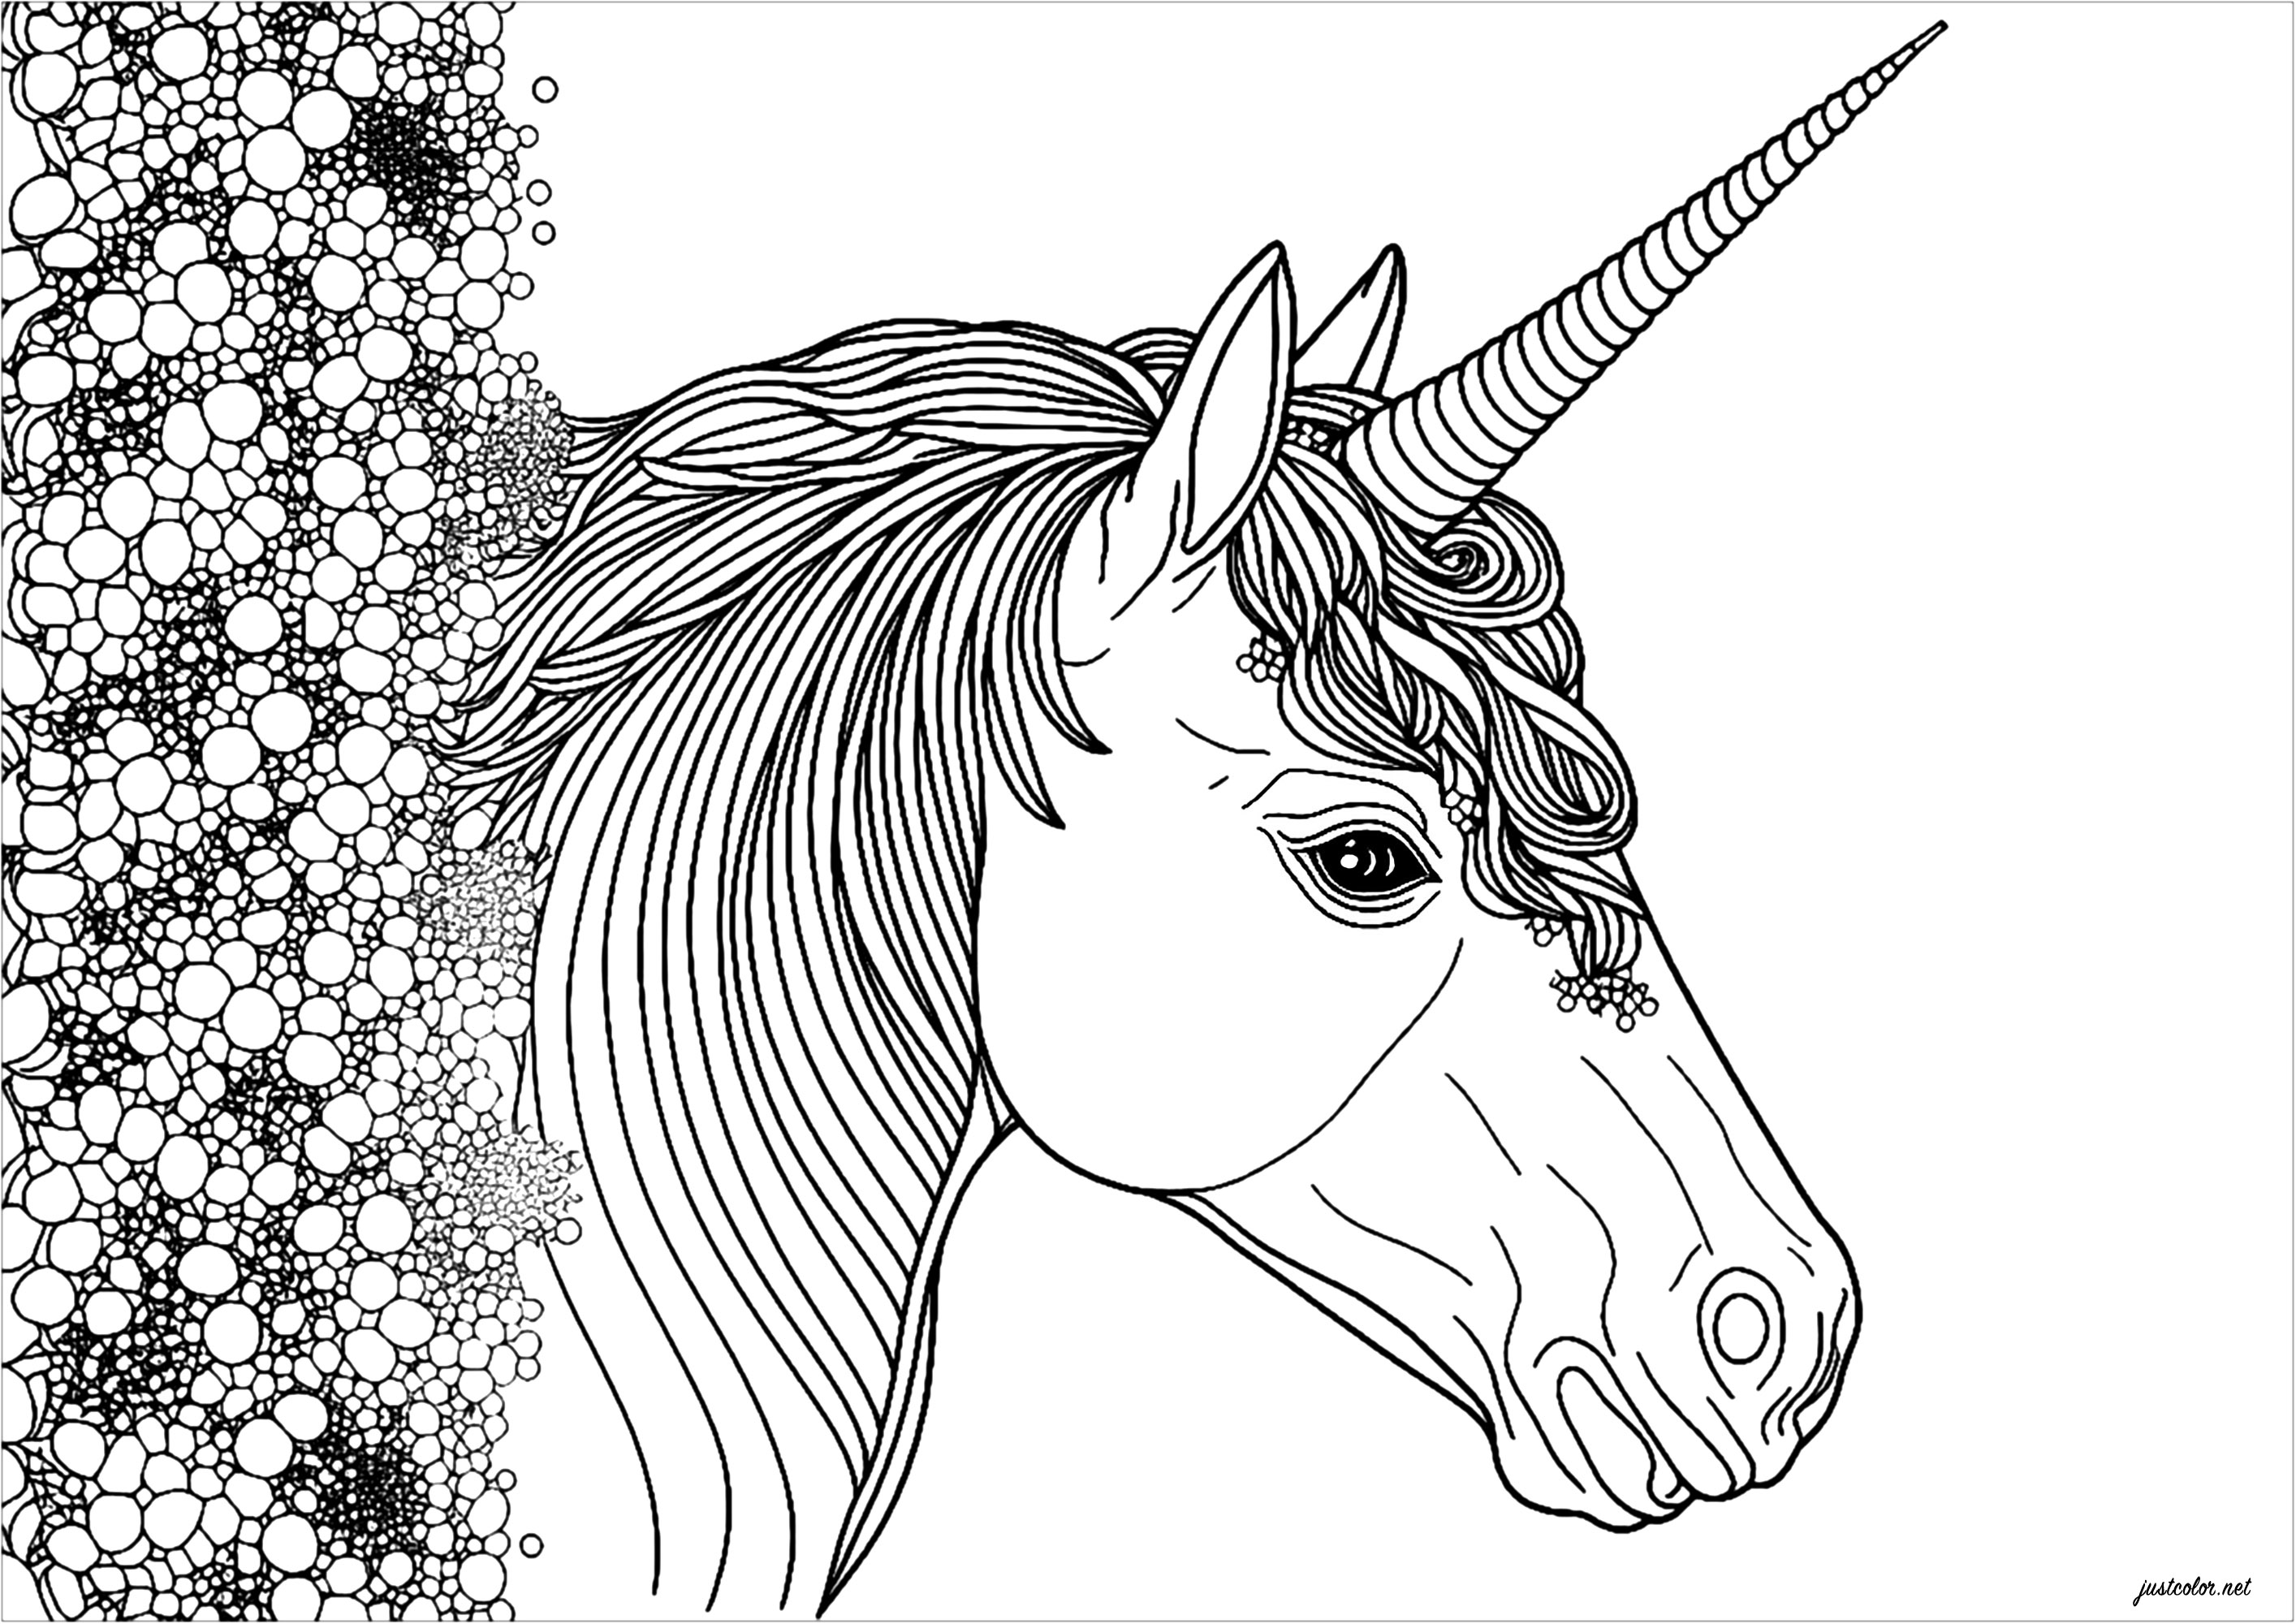 Simpatico unicorno realistico in vista di profilo. Questo unicorno sembra uscito da una valanga di diamanti